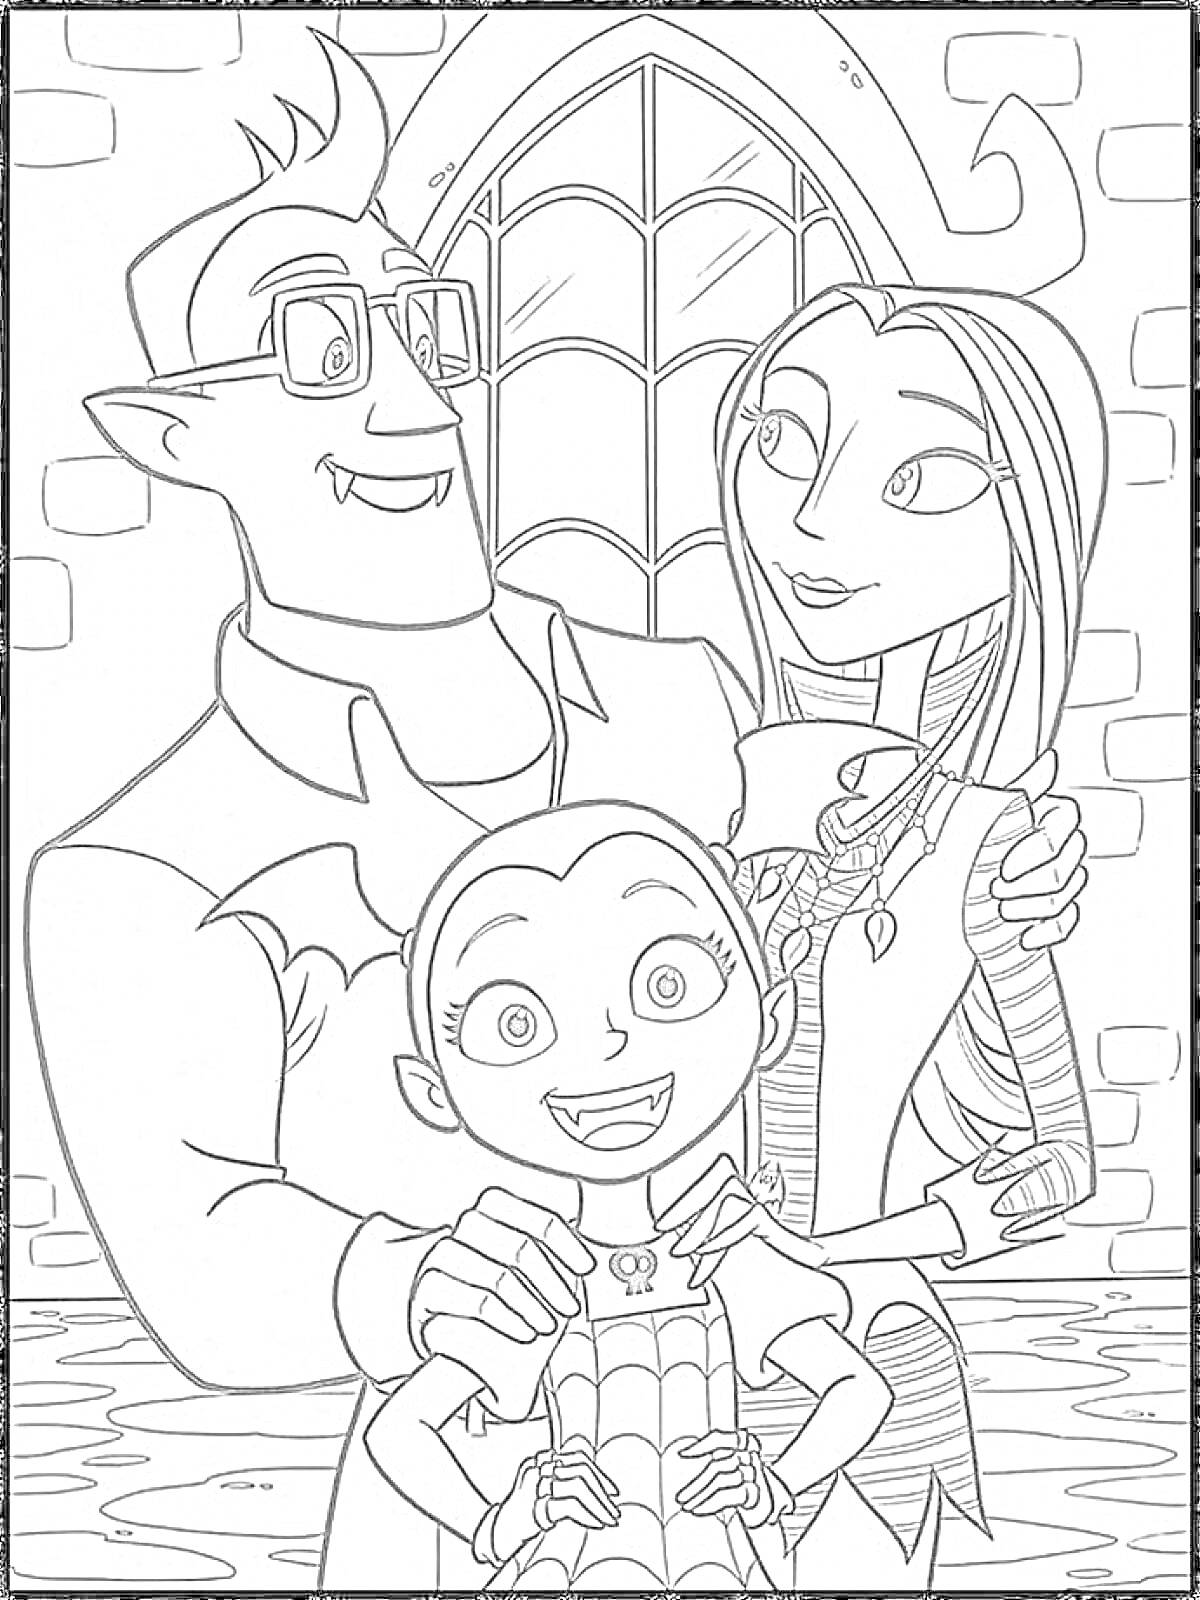 Раскраска Семейное фото Вампирины с родителями на фоне окна с витражом